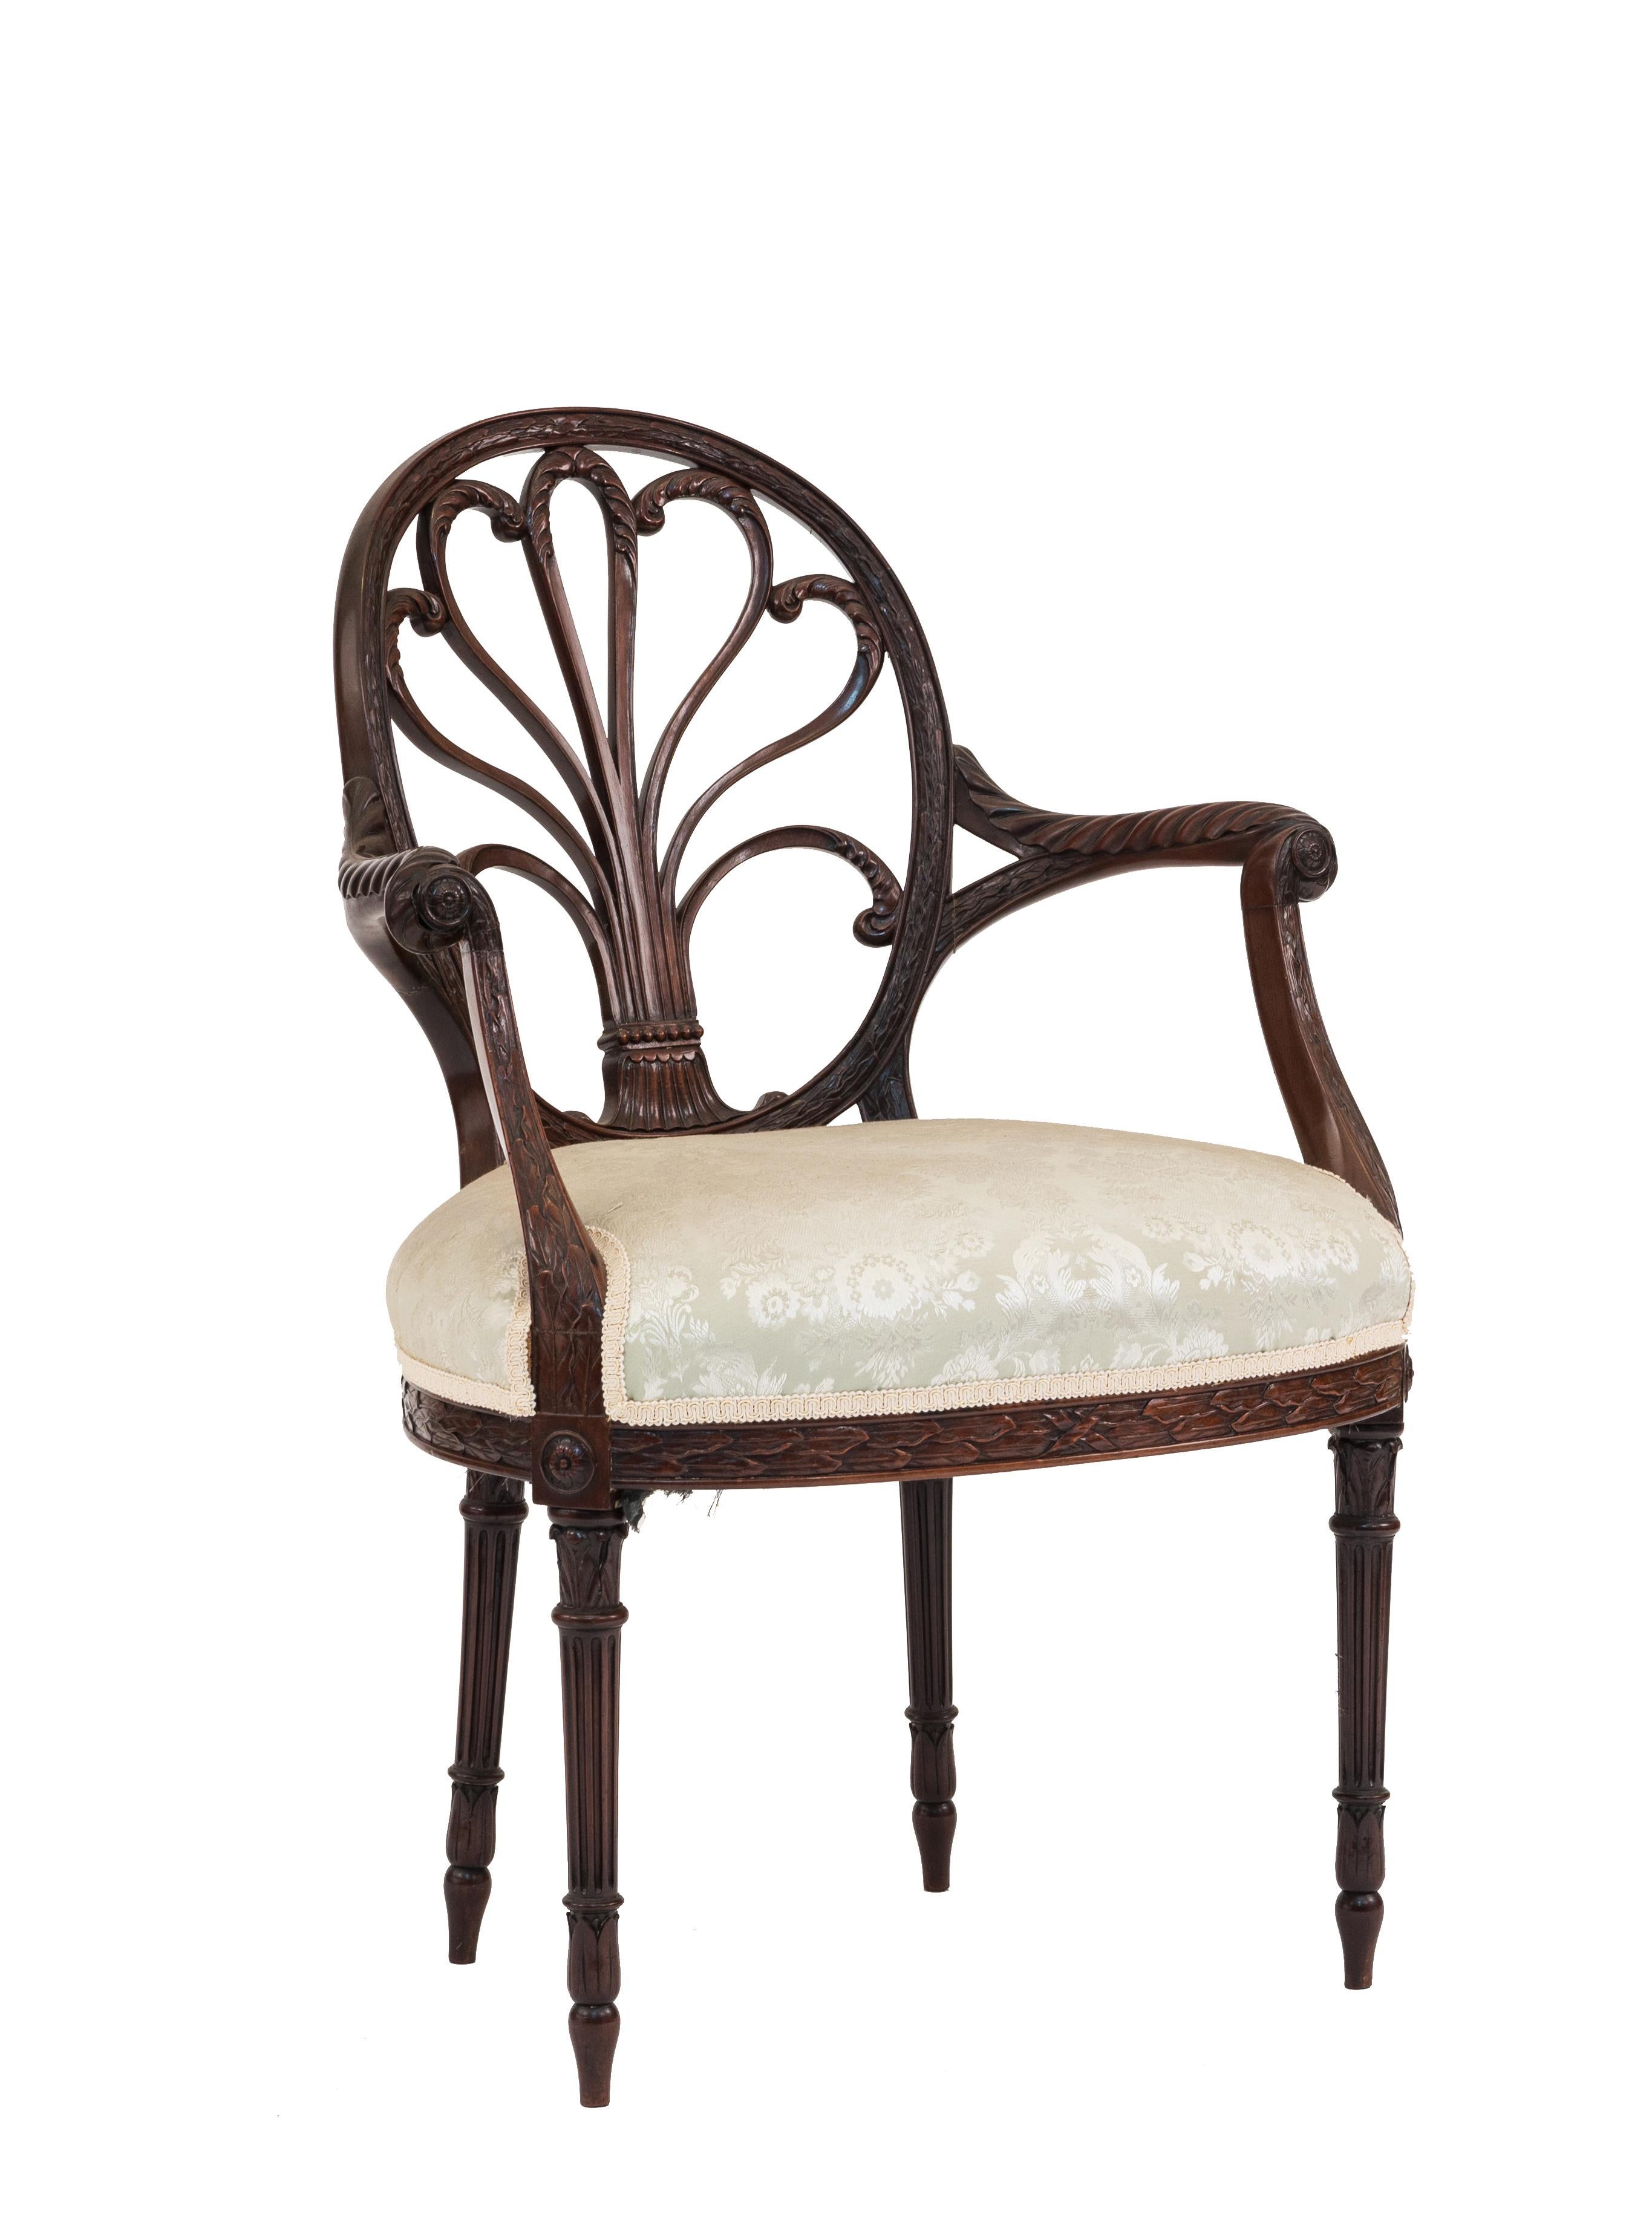 Paire de fauteuils anglais de style géorgien en acajou avec dossier sculpté de palmettes sur pieds cannelés et assise tapissée (19e siècle).